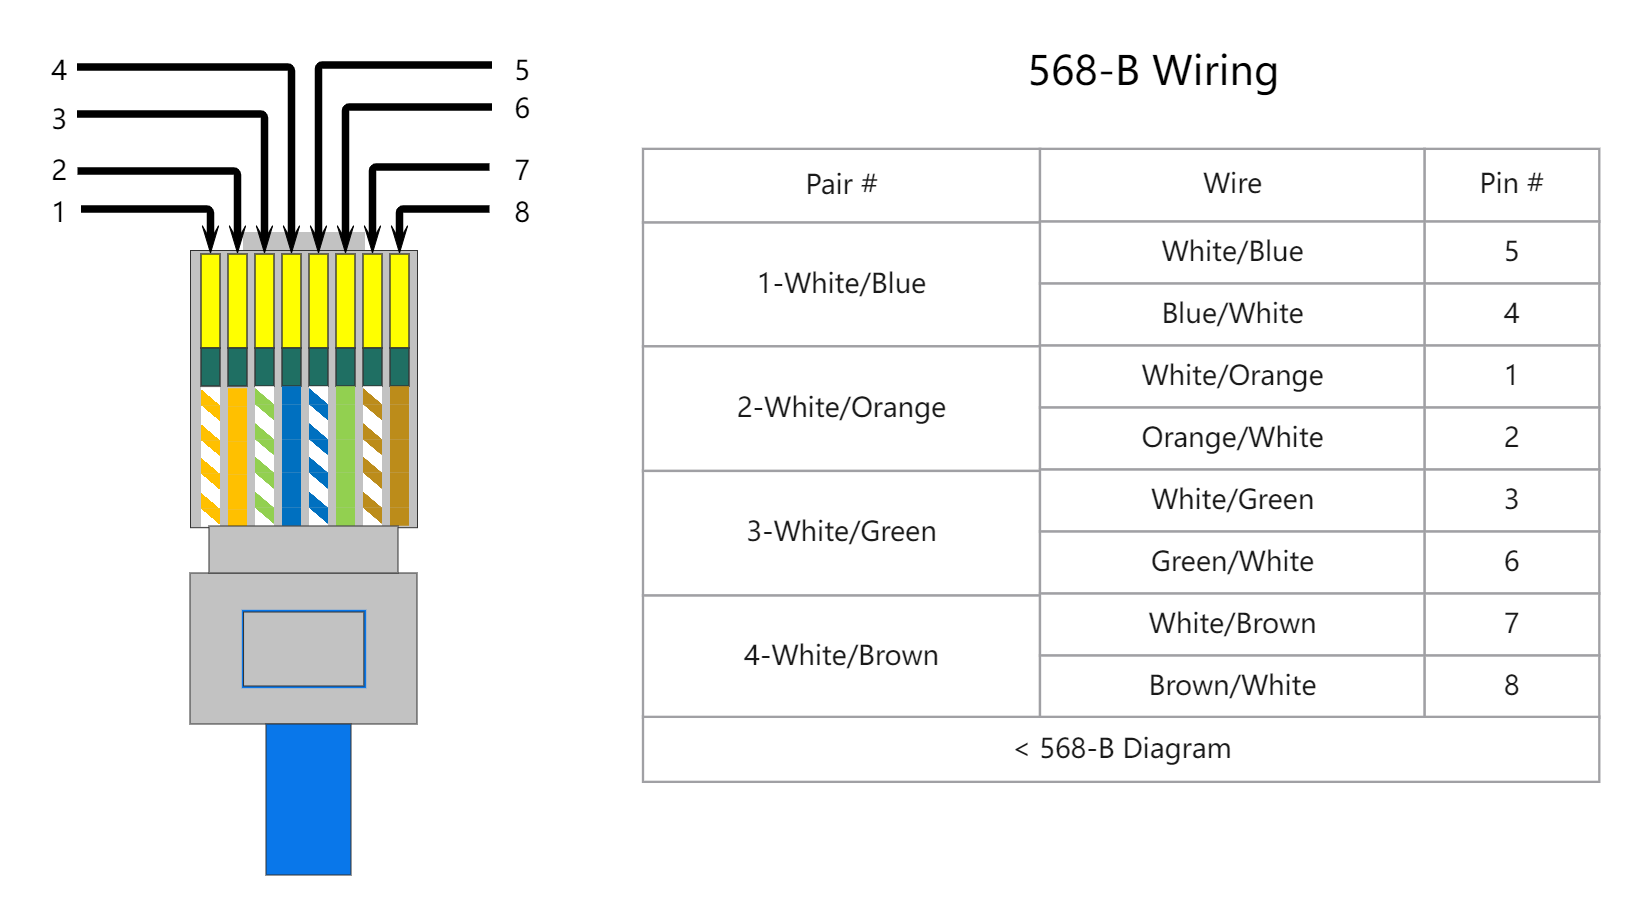 568-B Wiring